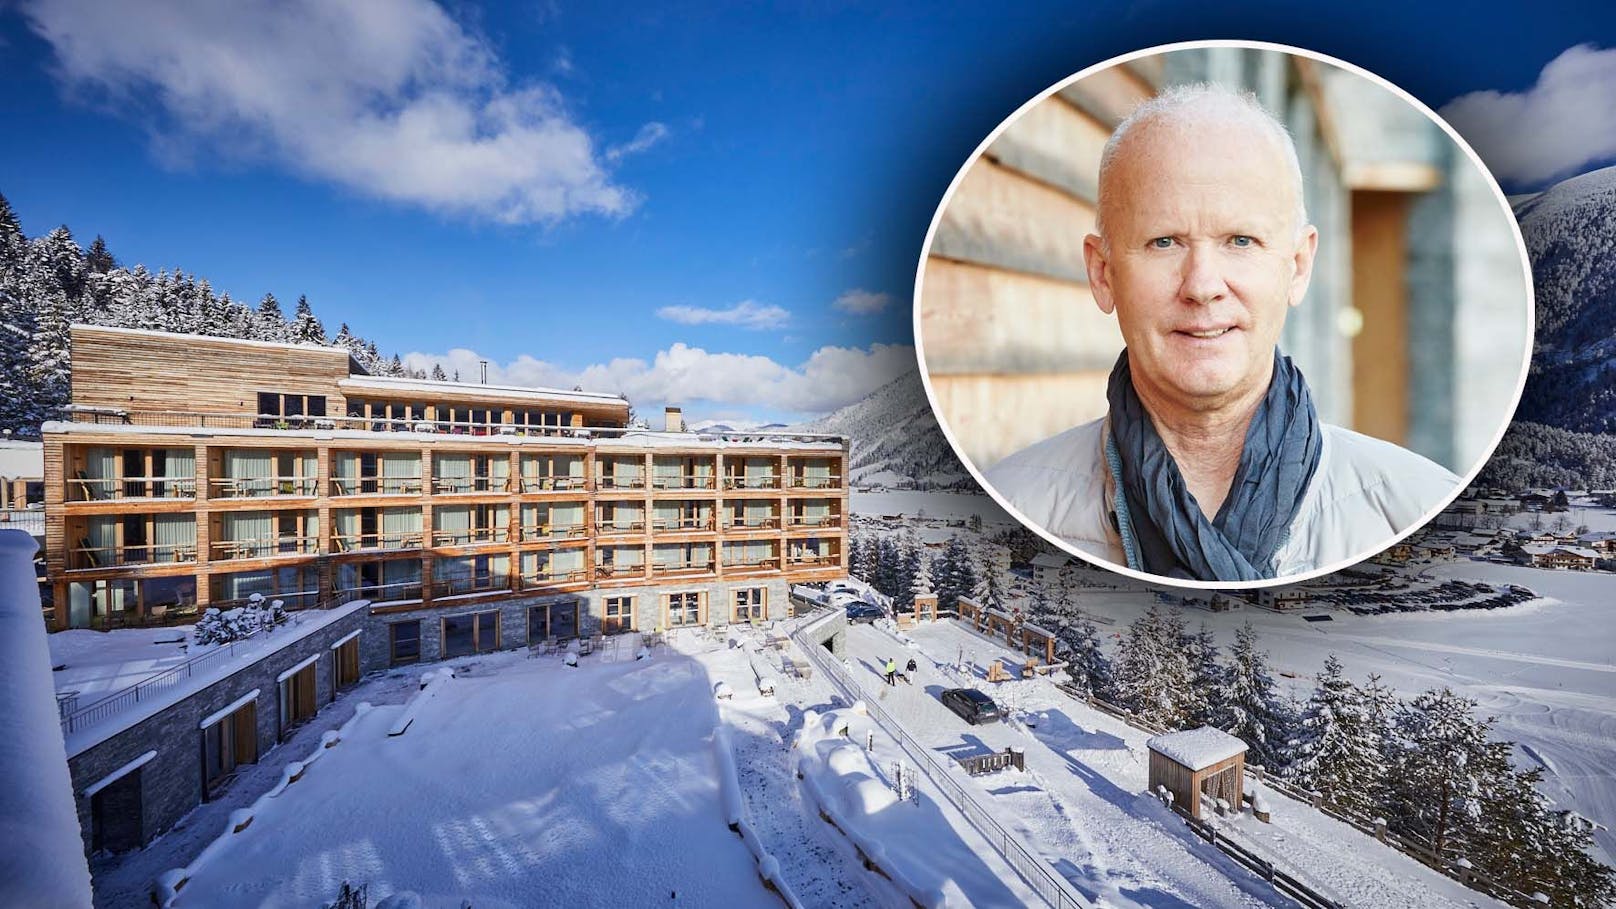 Günther Hlebaina leitet das Luxus-Hotel "Das Kronthaler" in Tirol. Weil er nicht geimpft ist, muss er in seinem Gartenhaus arbeiten.